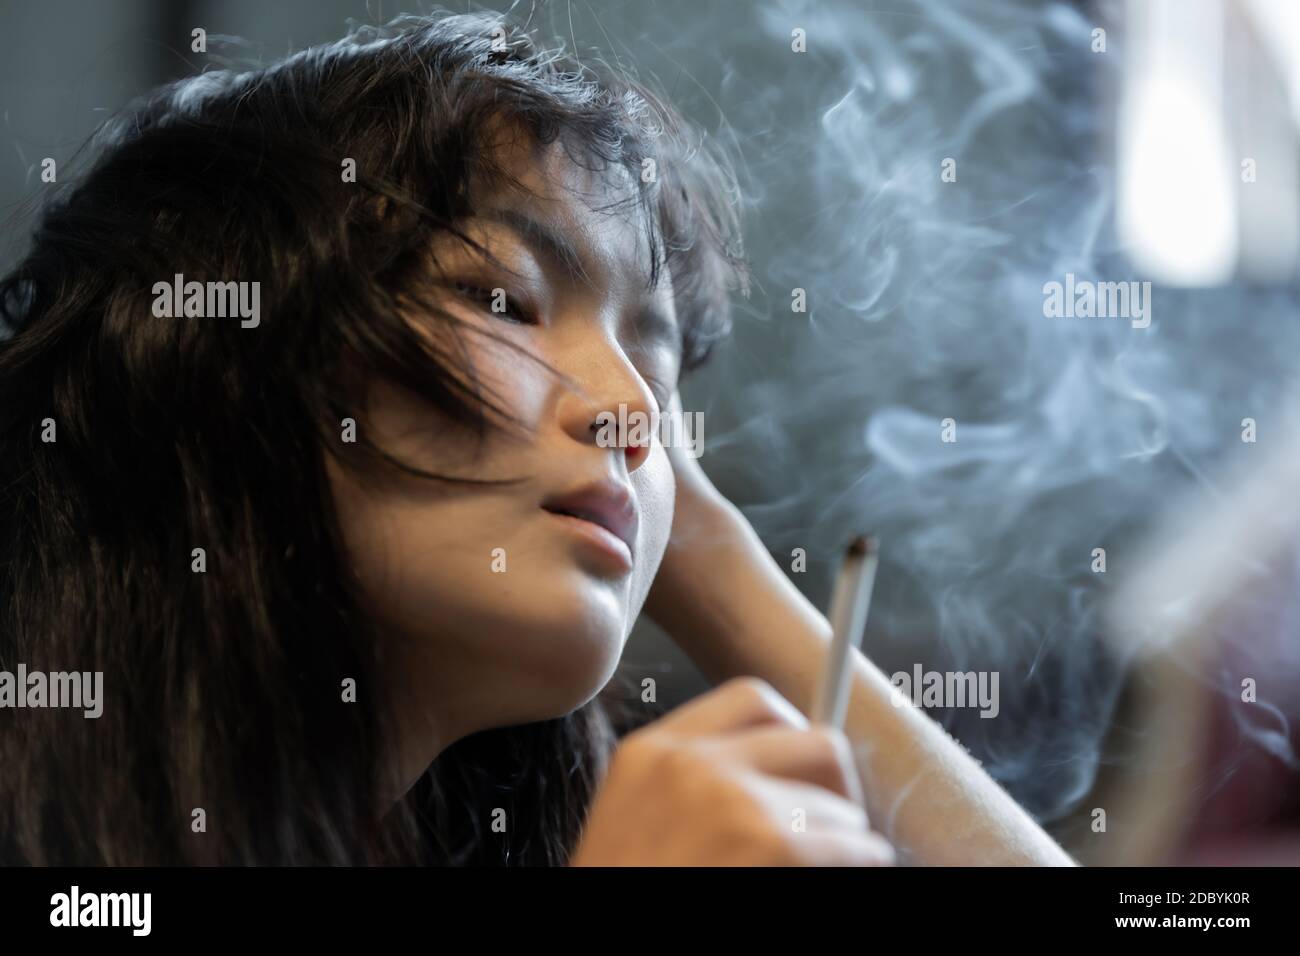 Asiatische Mädchen rauchen und hoffnungslos Konzept, Gefühl abwesend sein, einsame Mädchen Konzept Stockfoto